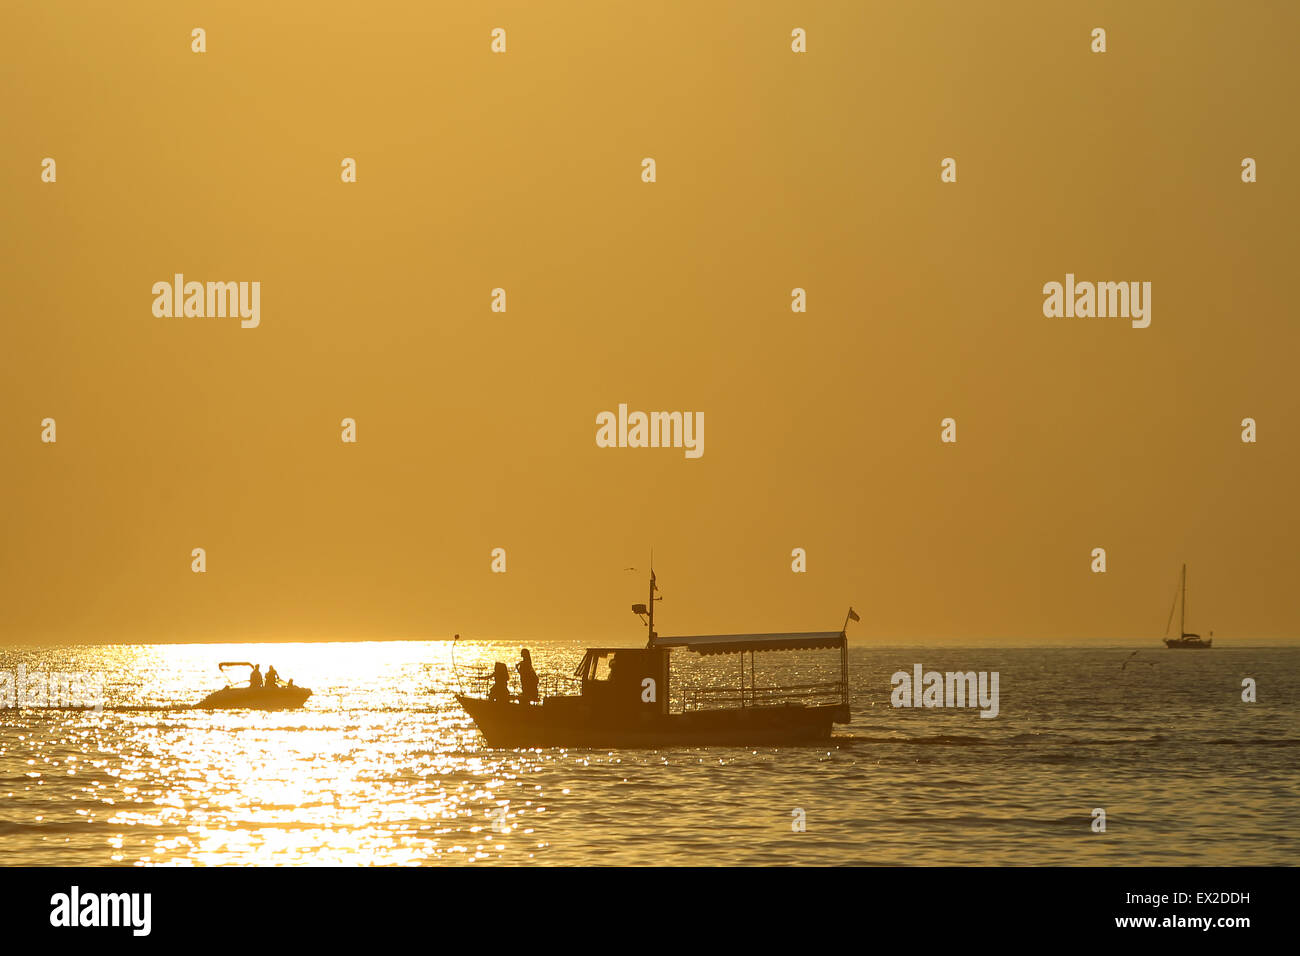 Rovinj Croatia sea boat sunset sunrise Stock Photo - Alamy